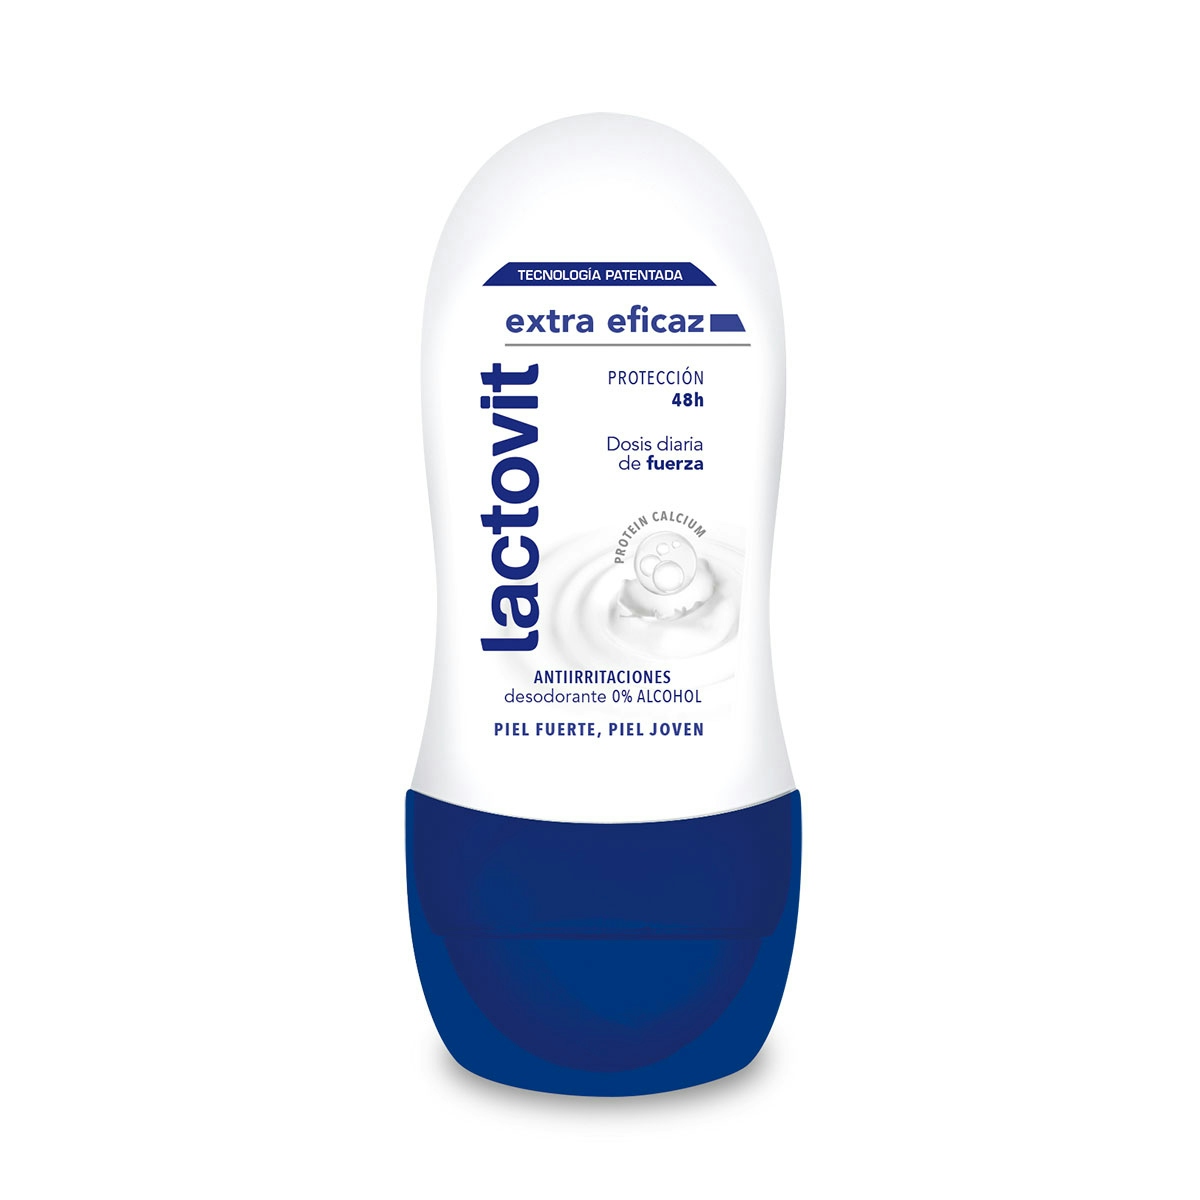 Lactovit - Desodorante Roll On Extra Eficaz Protección Inteligente, Anti-Irritaciones y 48H de Eficacia - 50 ml